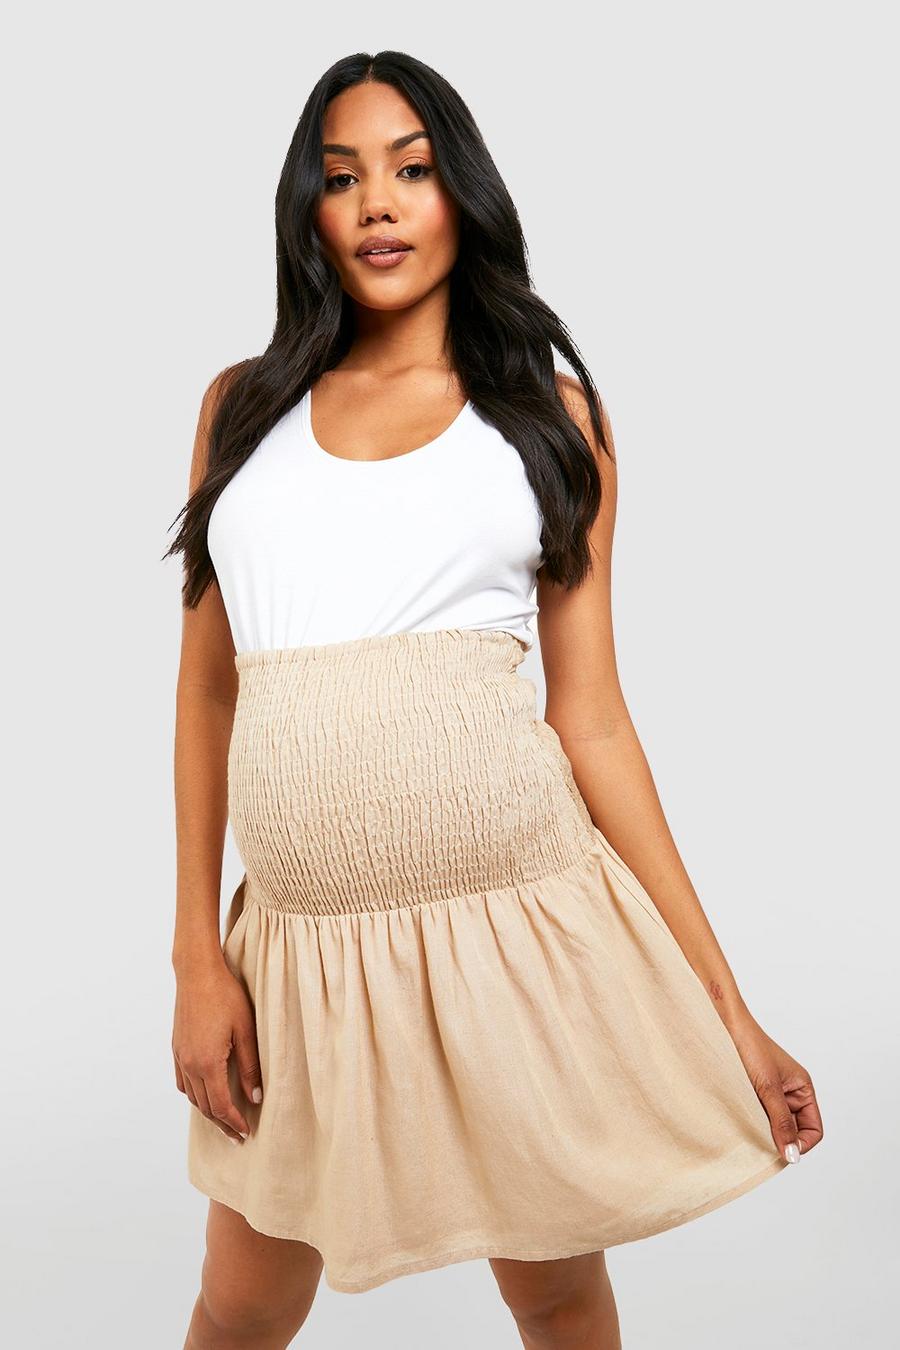 Binsi MaternityPrima Mama Birthing Skirt Size Small